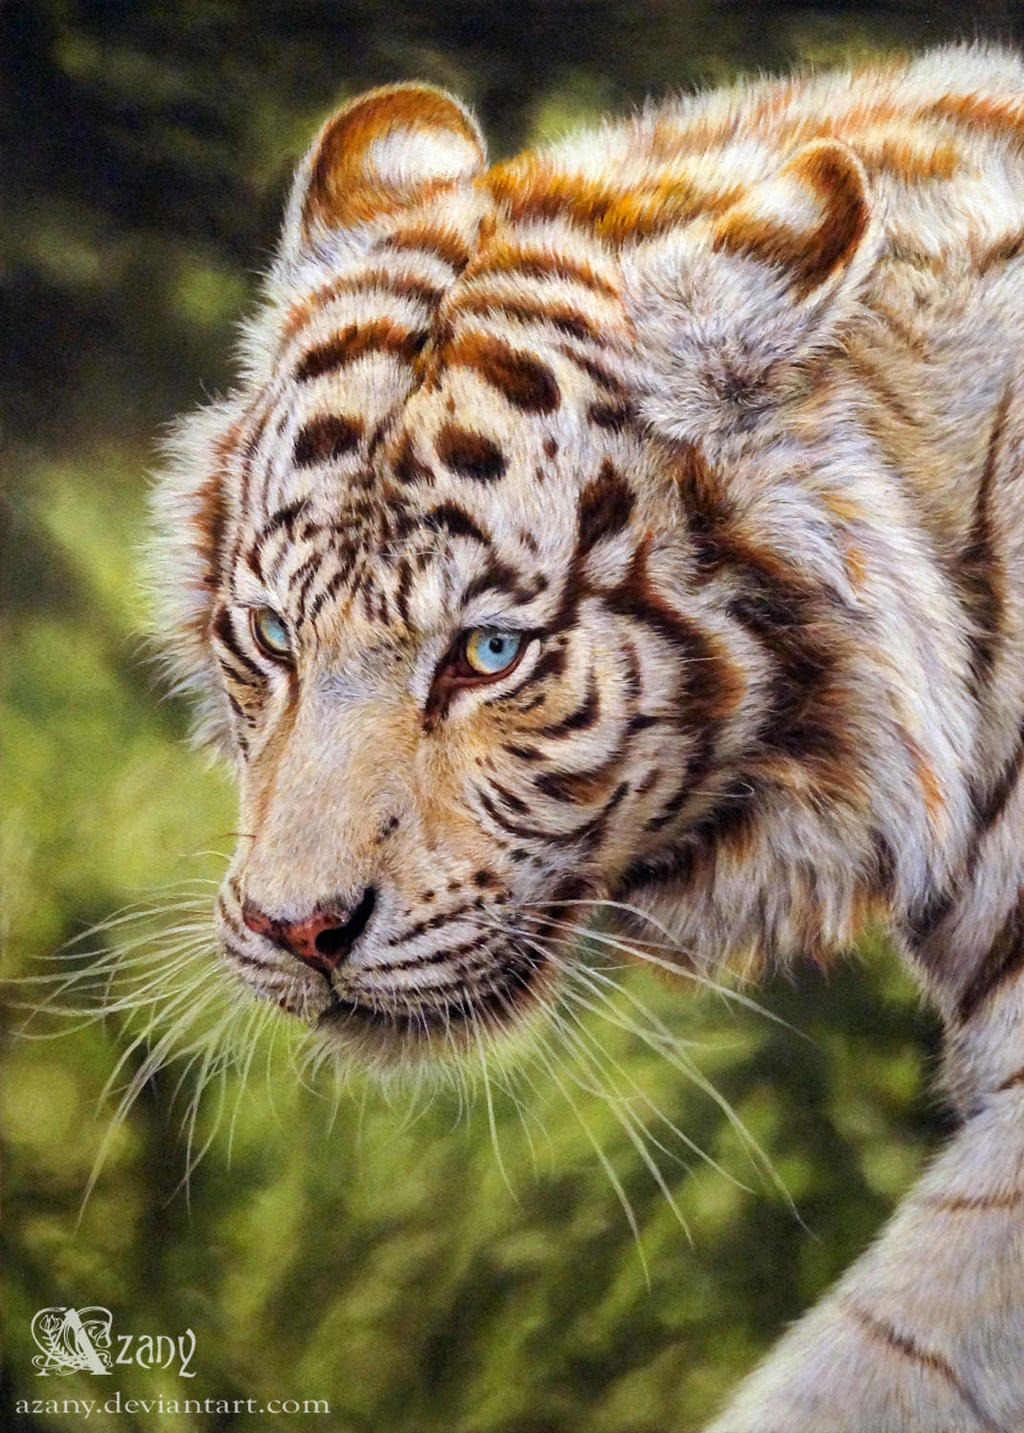 White Tiger by Ognimdo2002 on DeviantArt